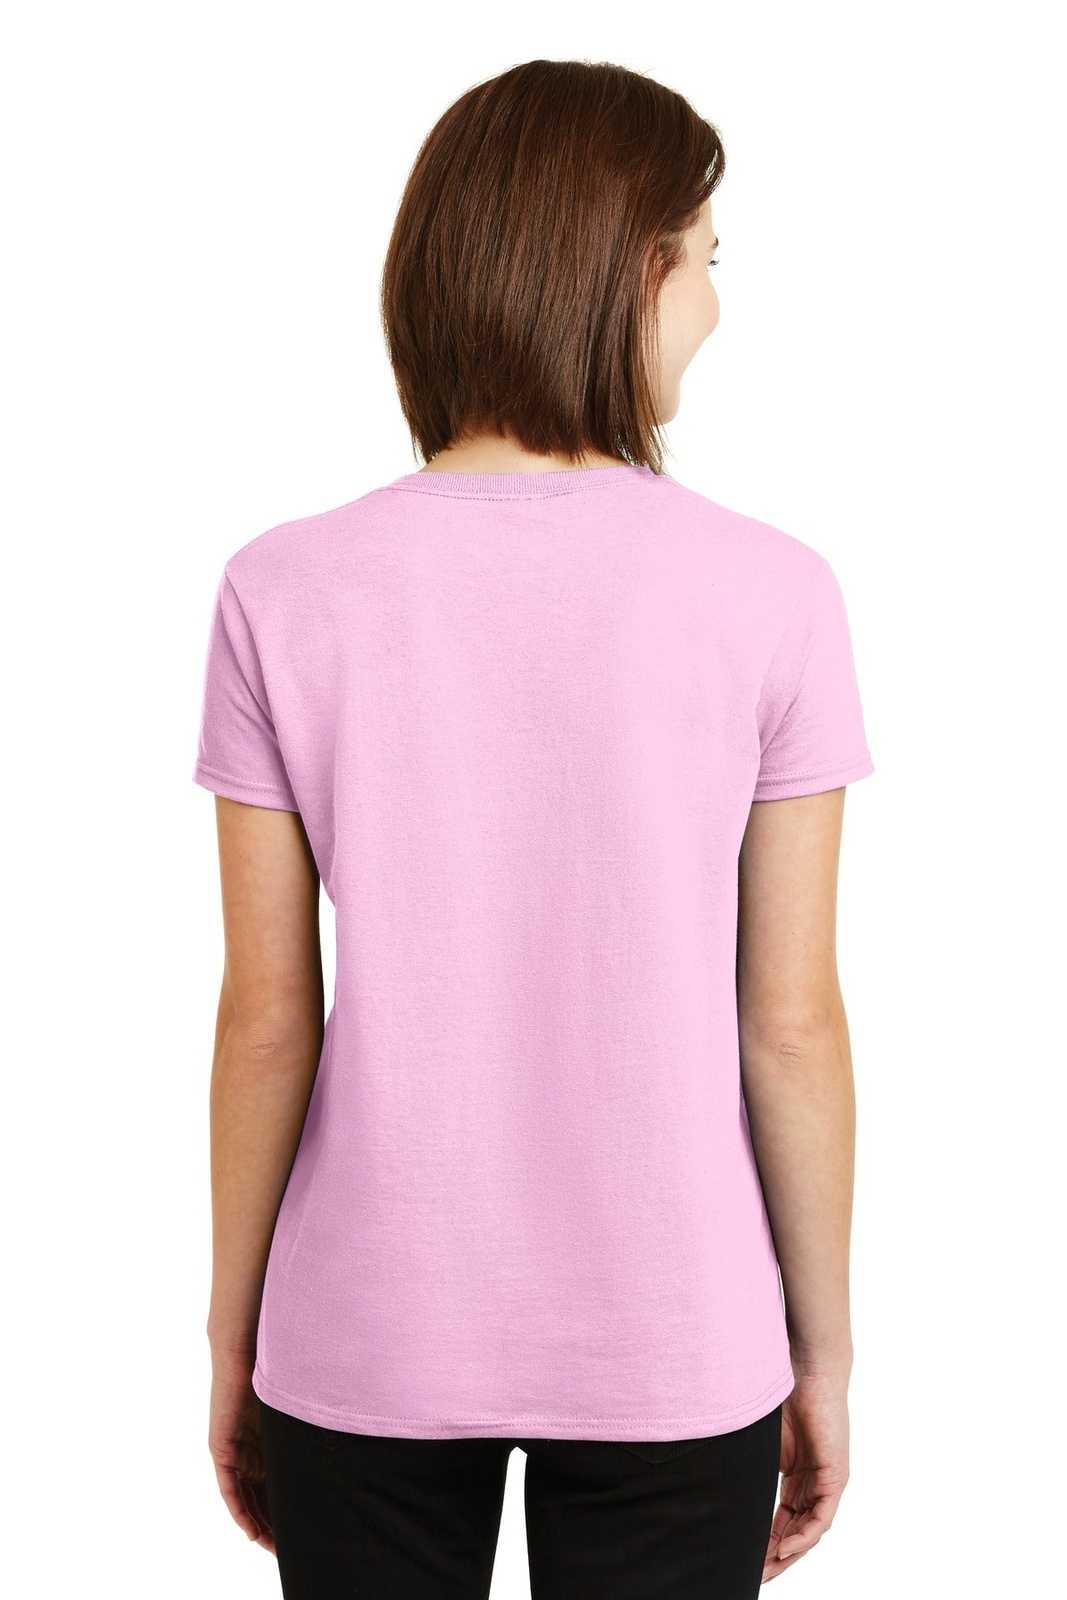 Gildan 2000L Ladies Ultra Cotton 100% Cotton T-Shirt - Light Pink - HIT a Double